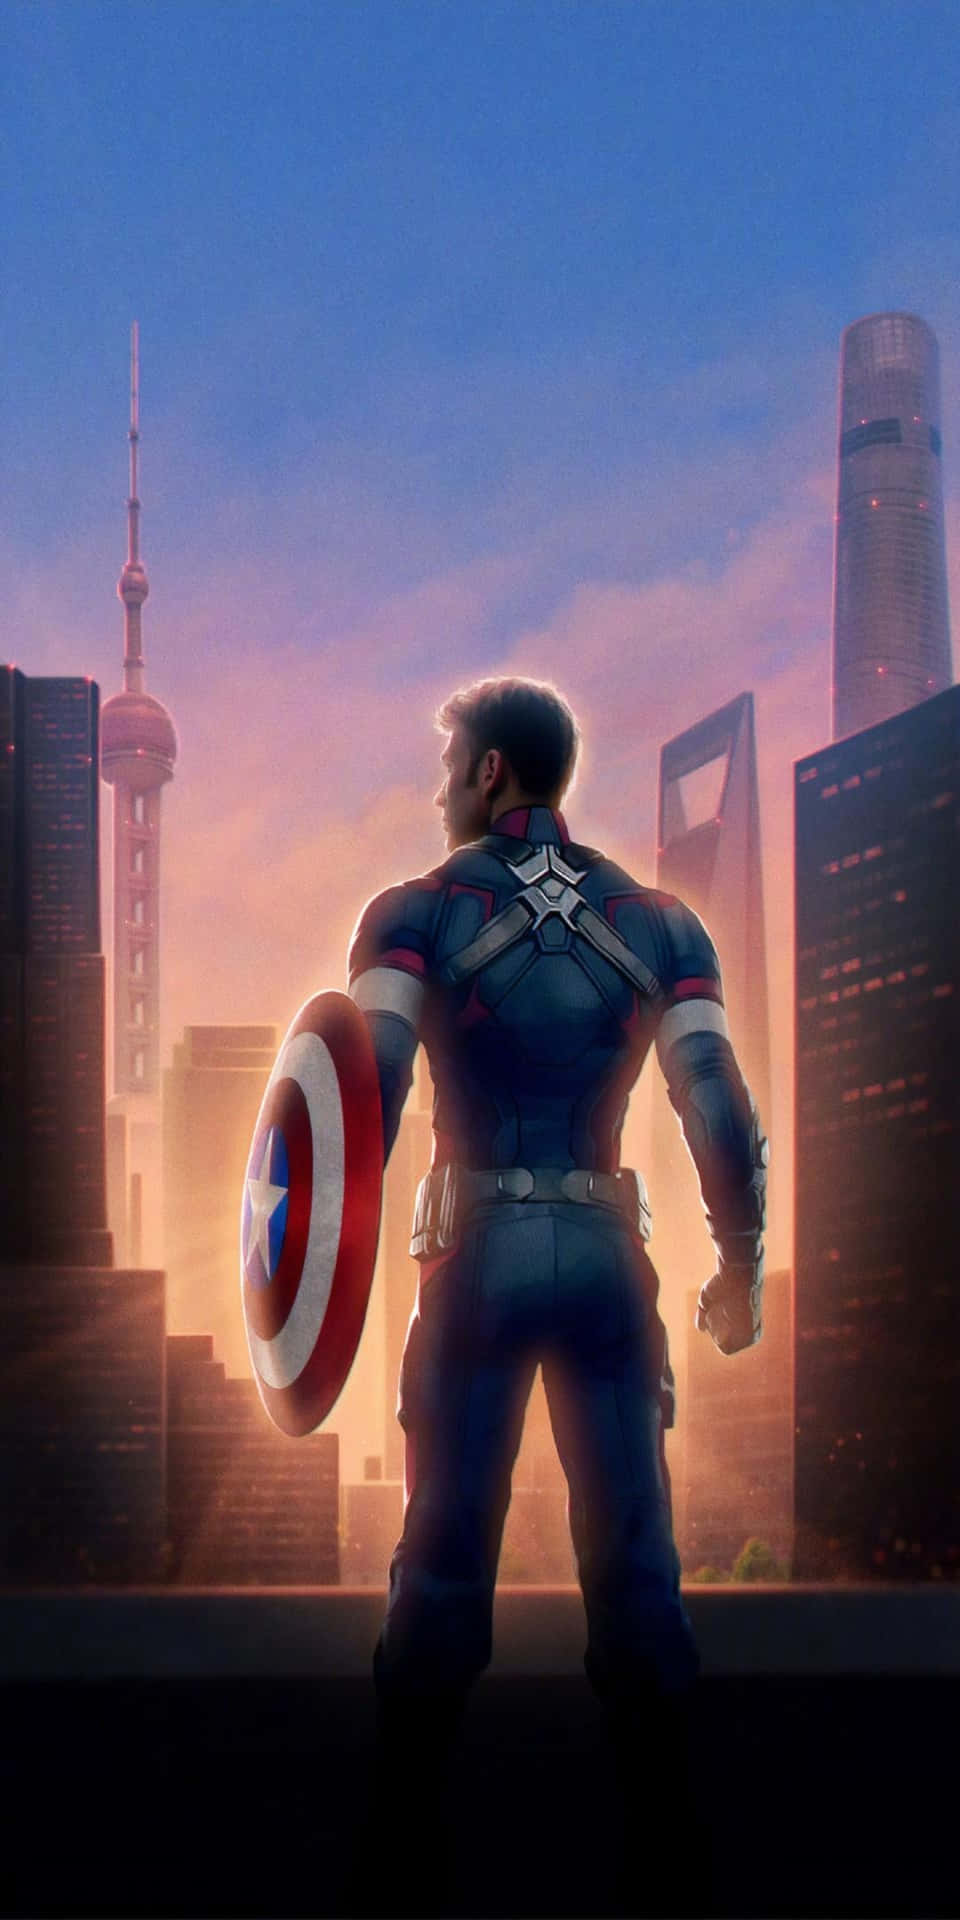 Fondode Pantalla Del Pixel 3 Con El Capitán América En El Background De Nueva York